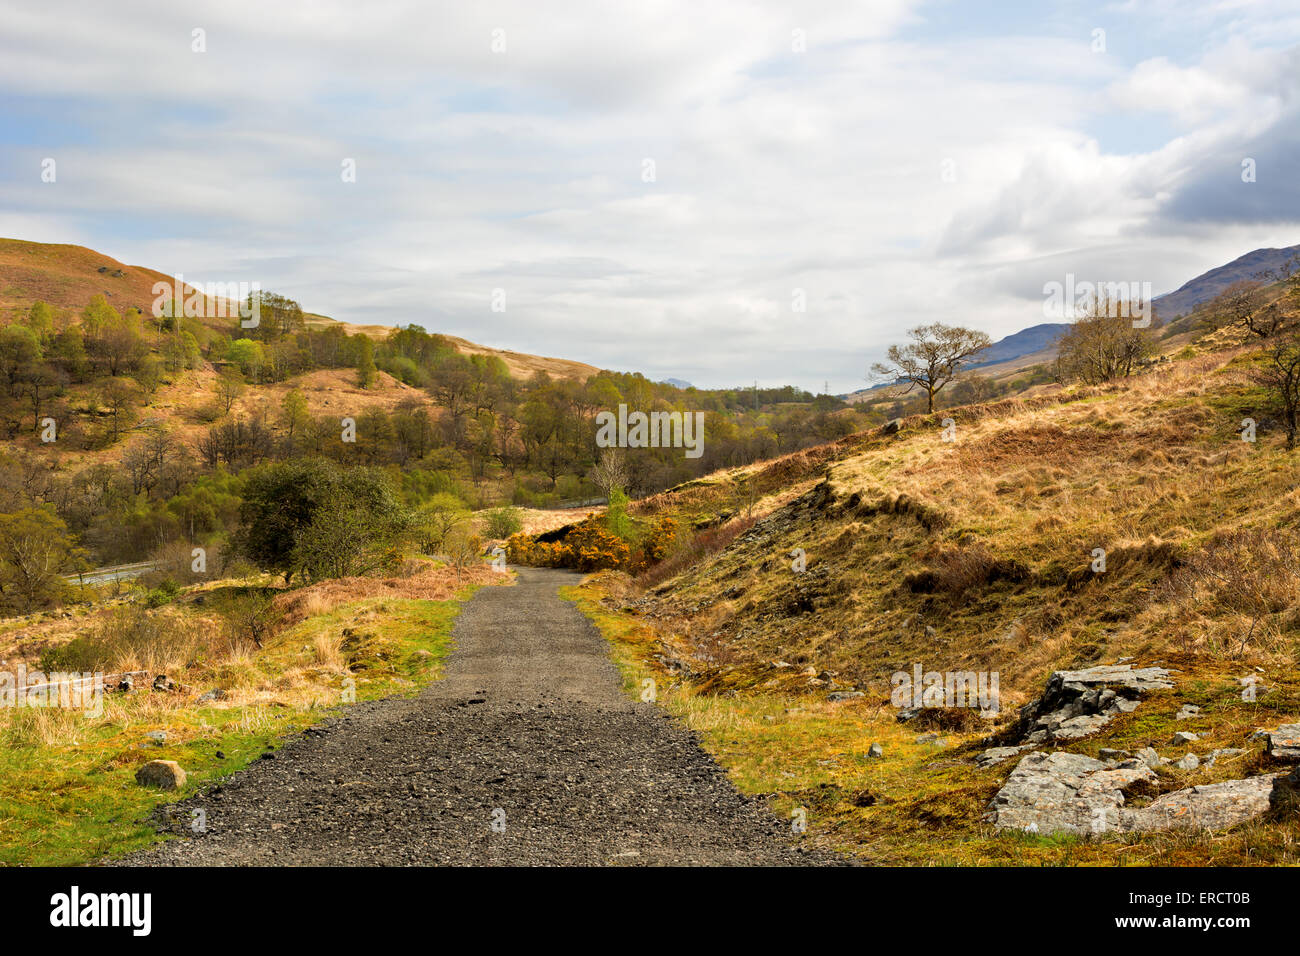 Ländliche Kiesweg in den schottischen Highlands, West Highland Way. Schönen bewölkten Himmel Stockfoto